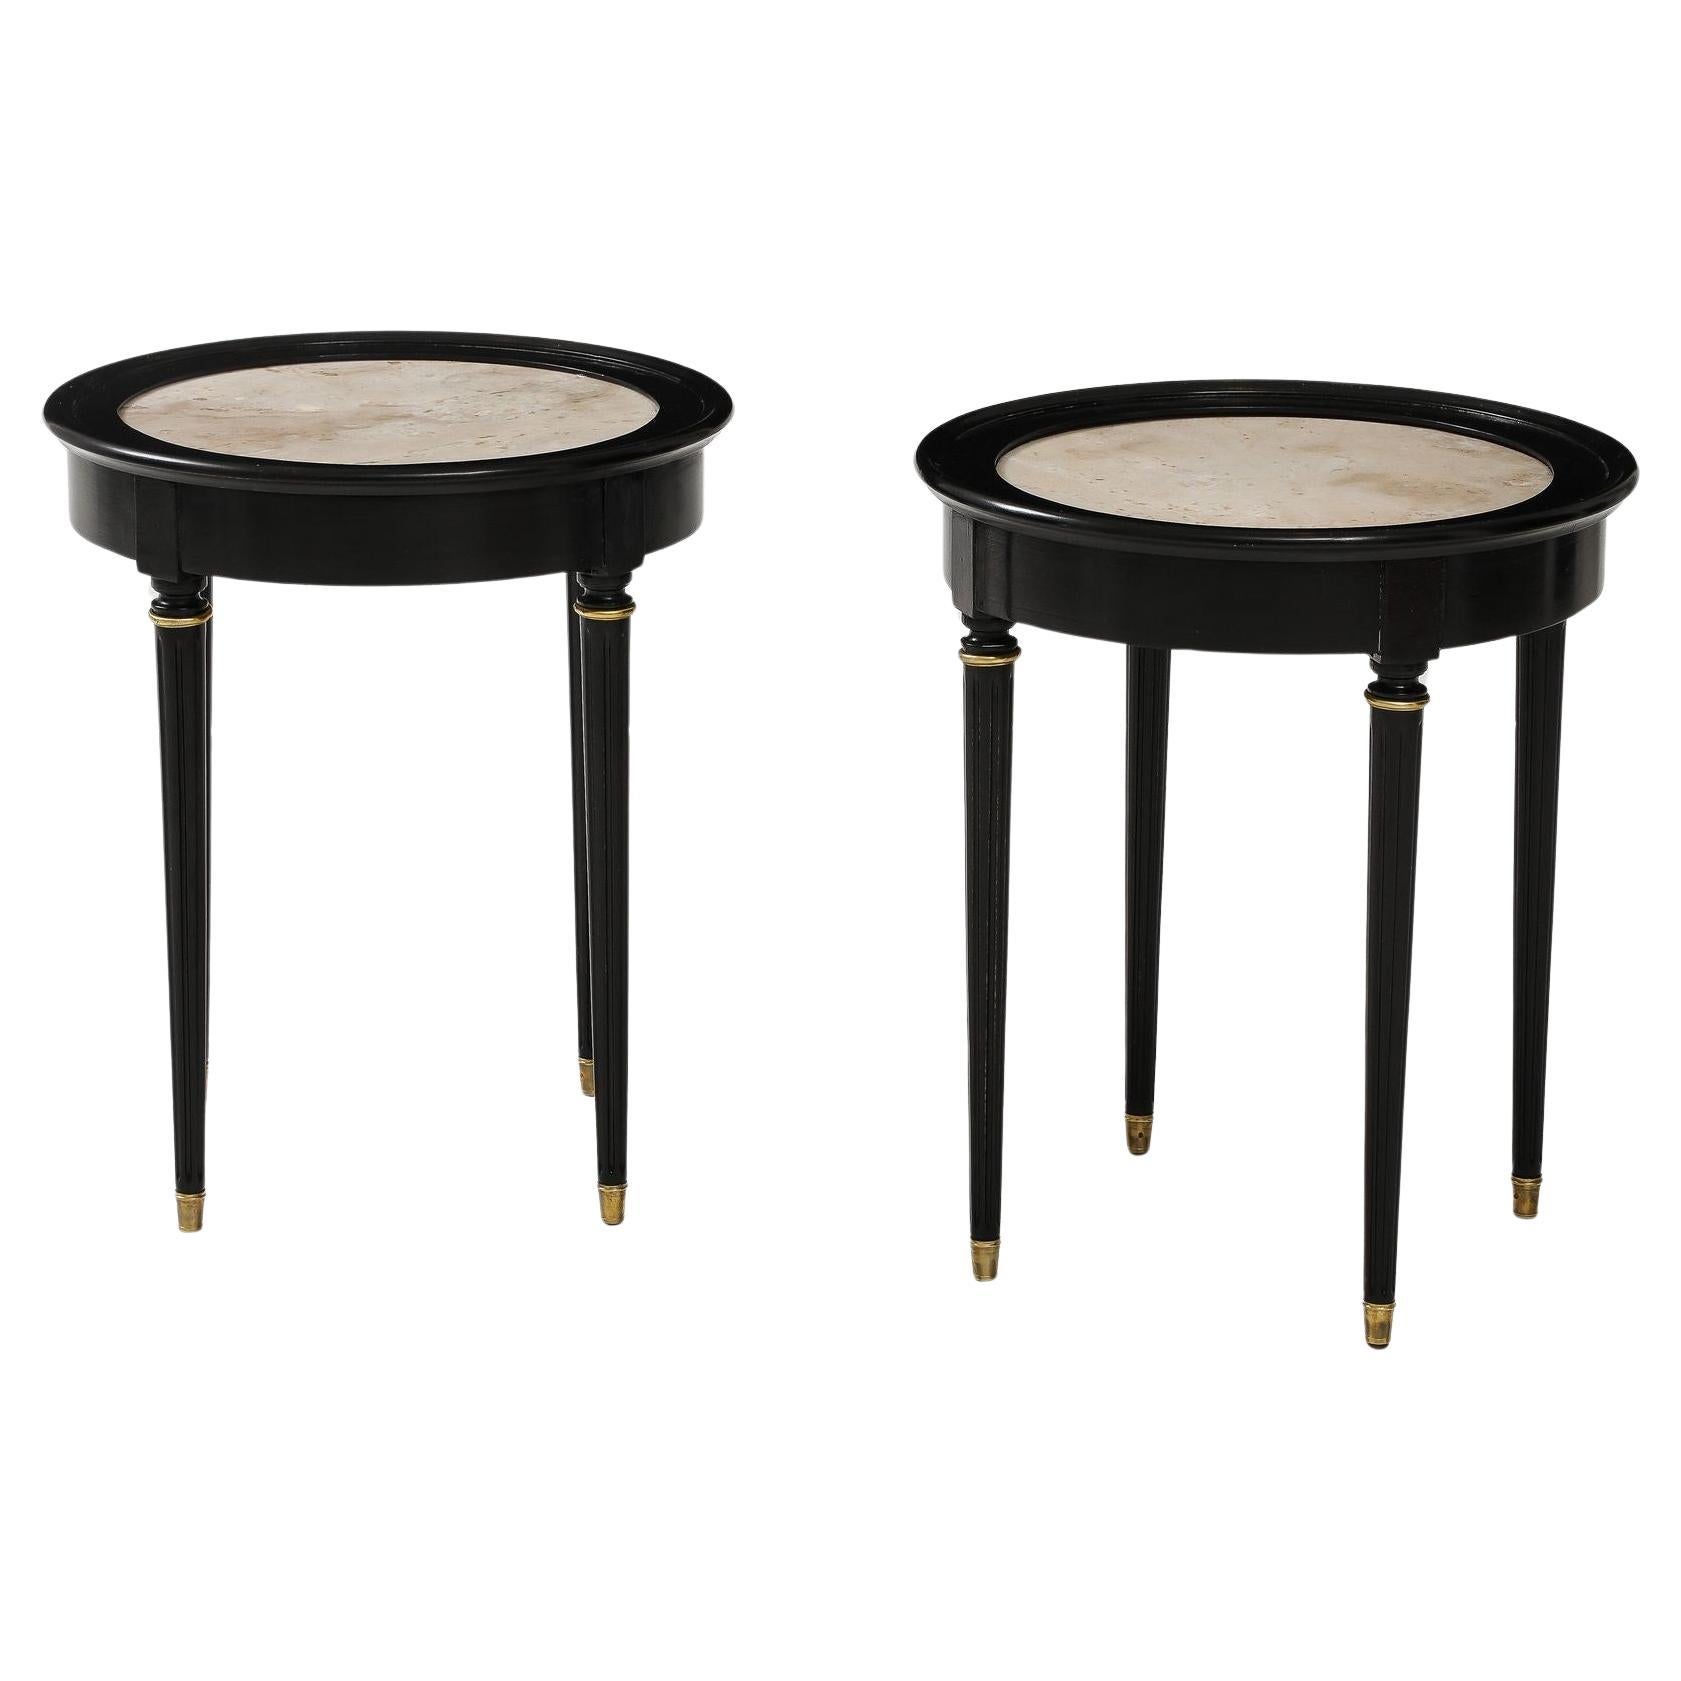 Une superbe paire de tables d'appoint circulaires en laque noire avec plateau en marbre